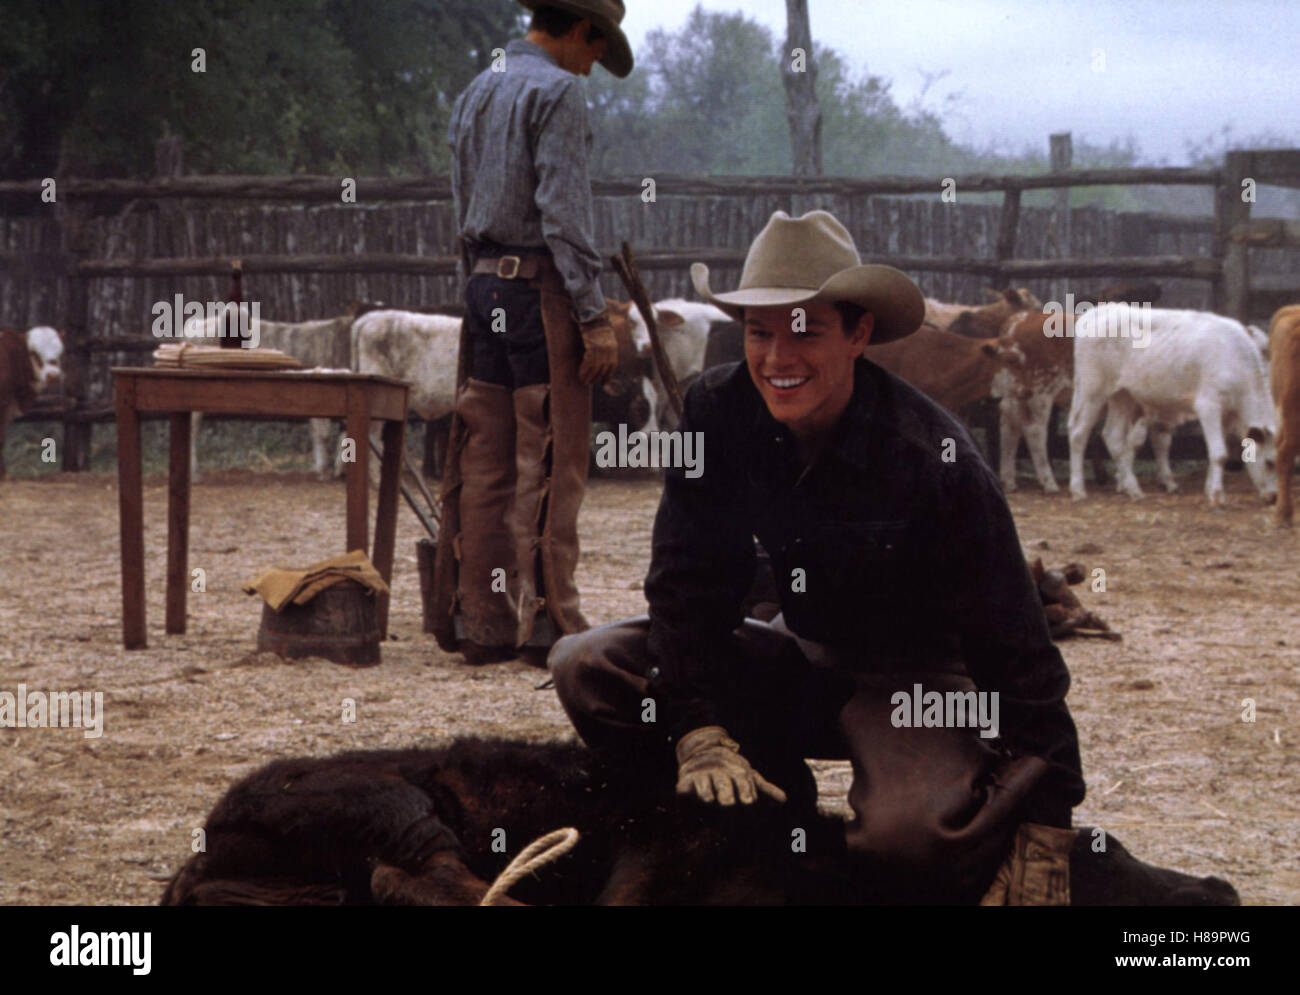 Tutti i die schönen Pferde (tutti i cavalli graziosi) USA 2000, Regie: Billy Bob Thornton, matt damon, Stichwort: Cowboy, Vieh, Kuh, la cotenna Foto Stock